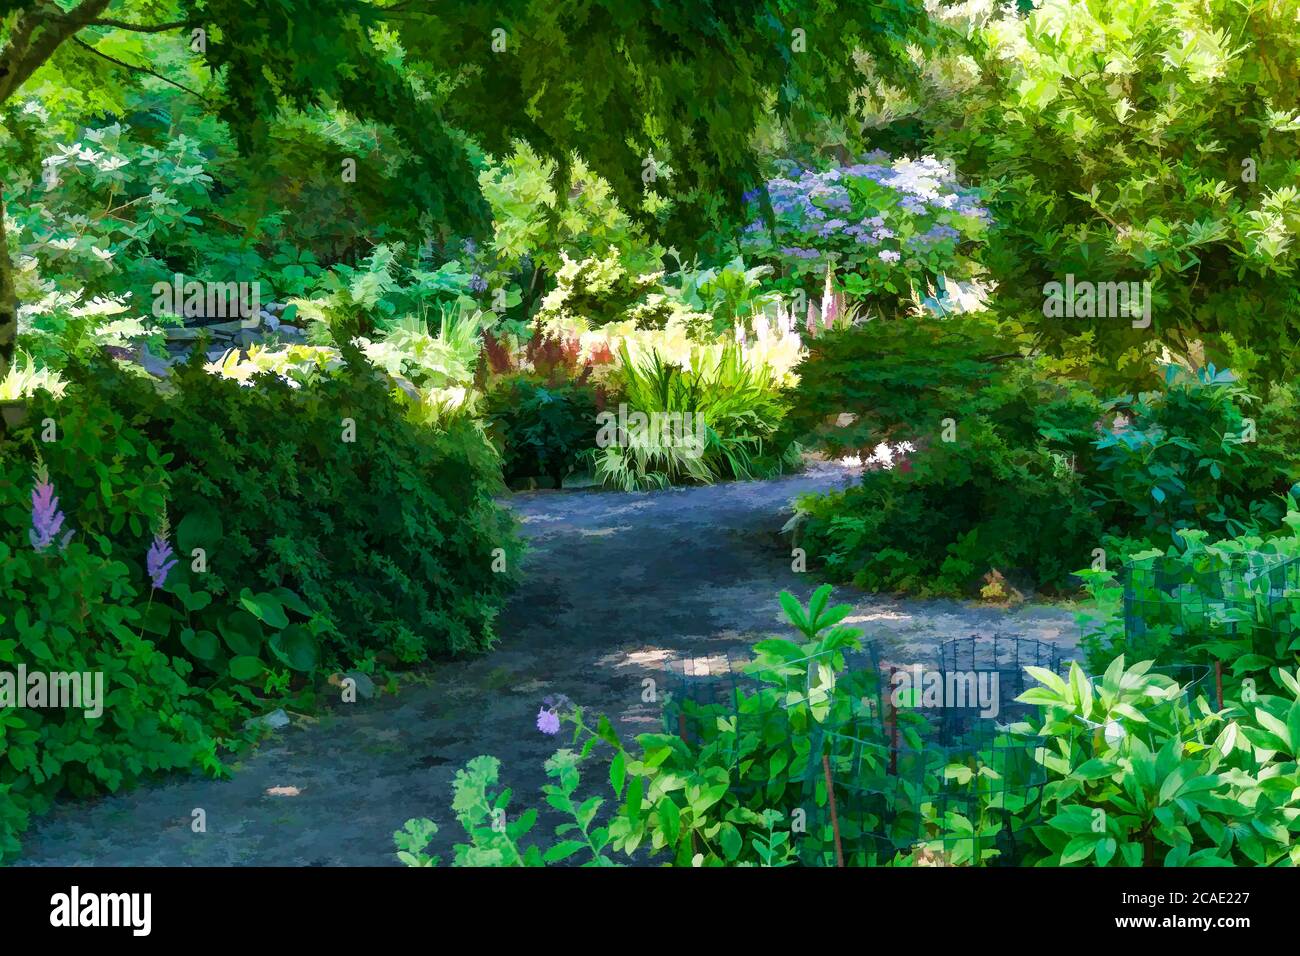 An artistic verion of a garden scene in Seatac, Washington. Stock Photo